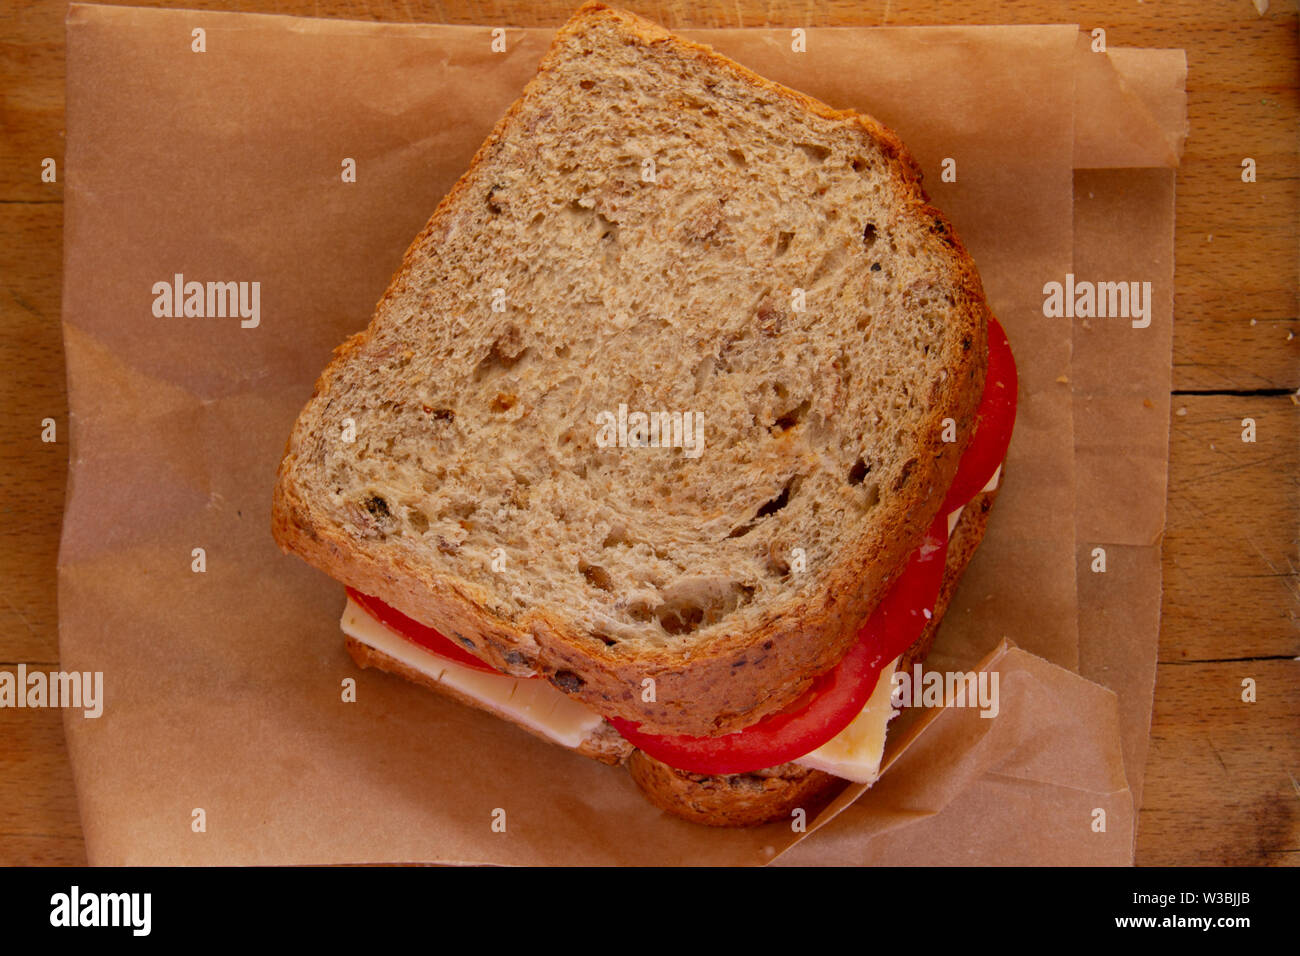 Regardant vers le bas sur une tomate et fromage sandwich sur grenier sur un sac en papier brun sur le dessus d'une vieille carte de pain Banque D'Images